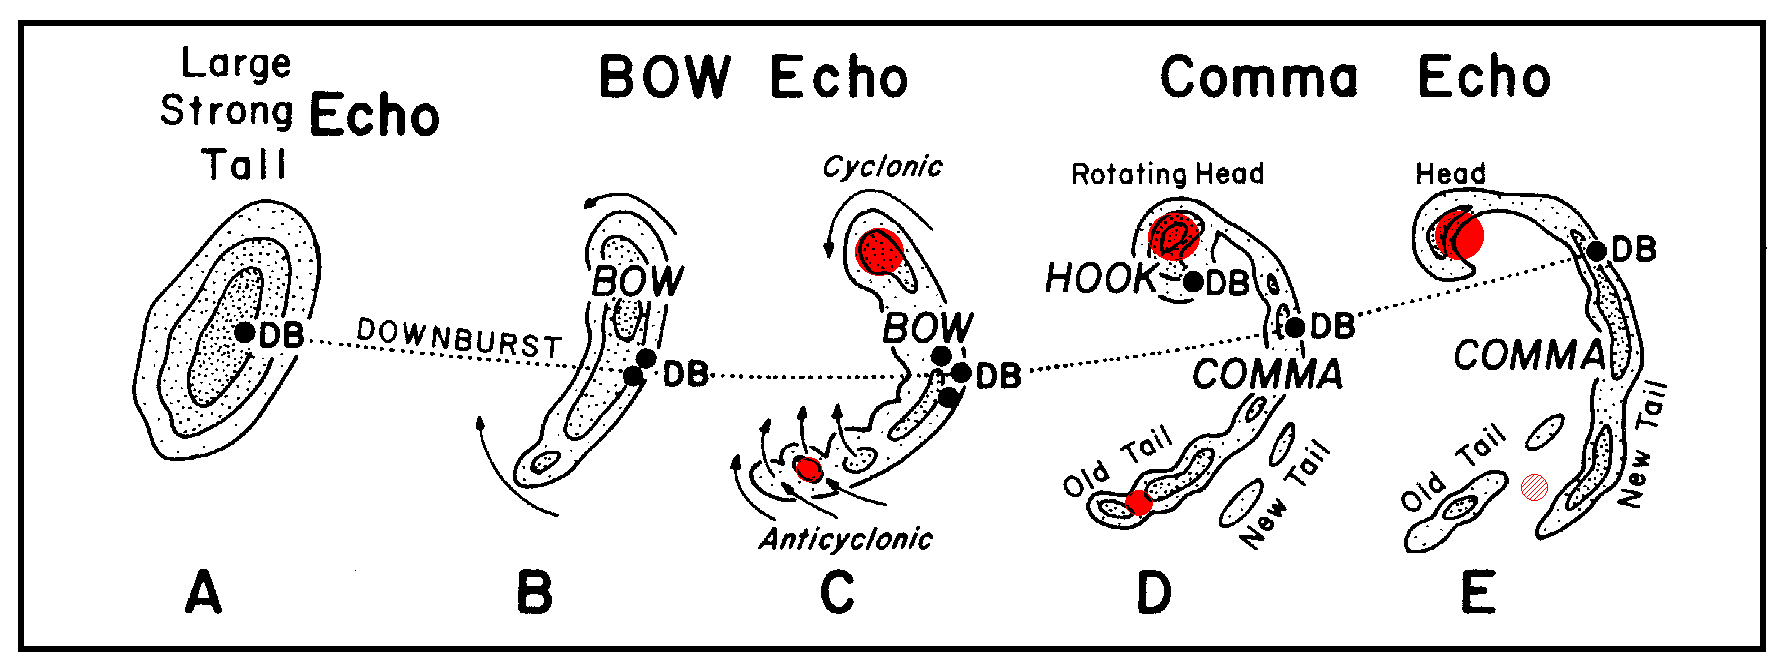 Bow Echo Prototype